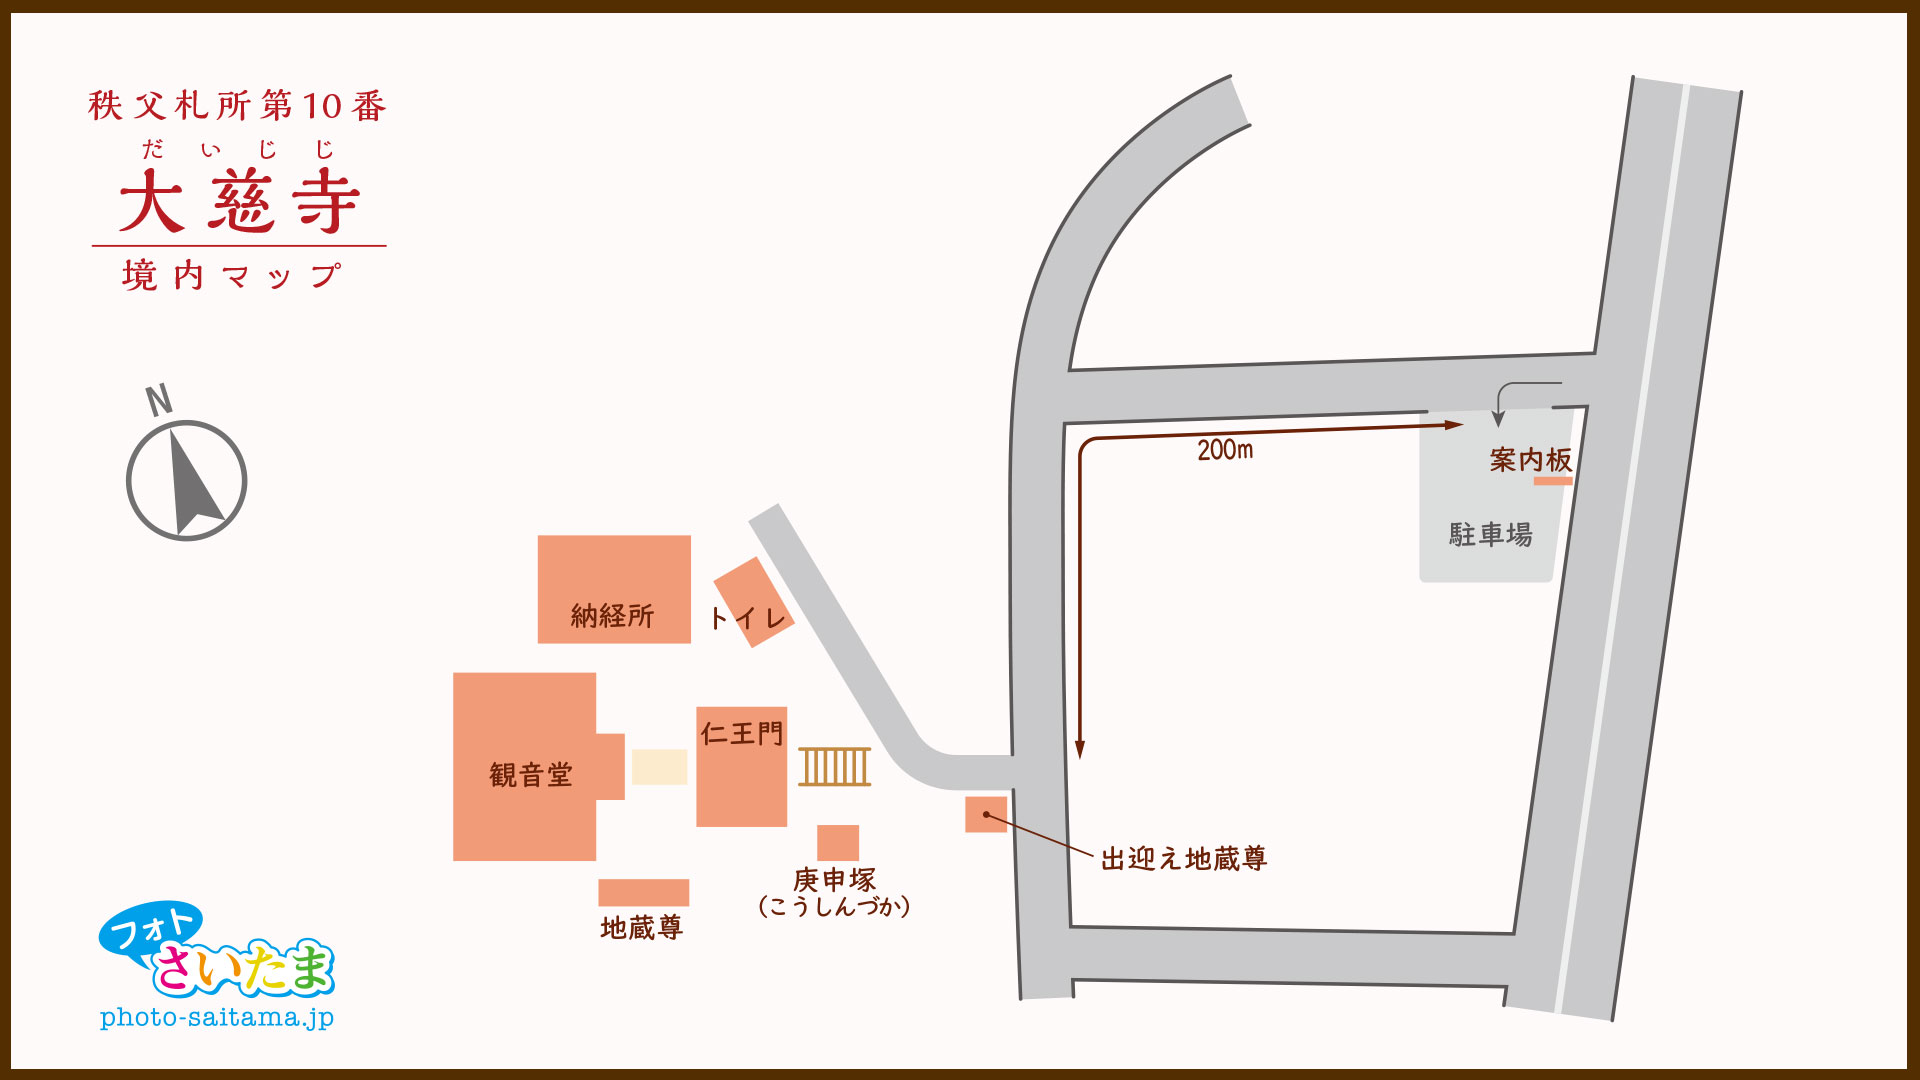 秩父札所 第１０番【萬松山・大慈寺】境内マップ | フォトさいたま